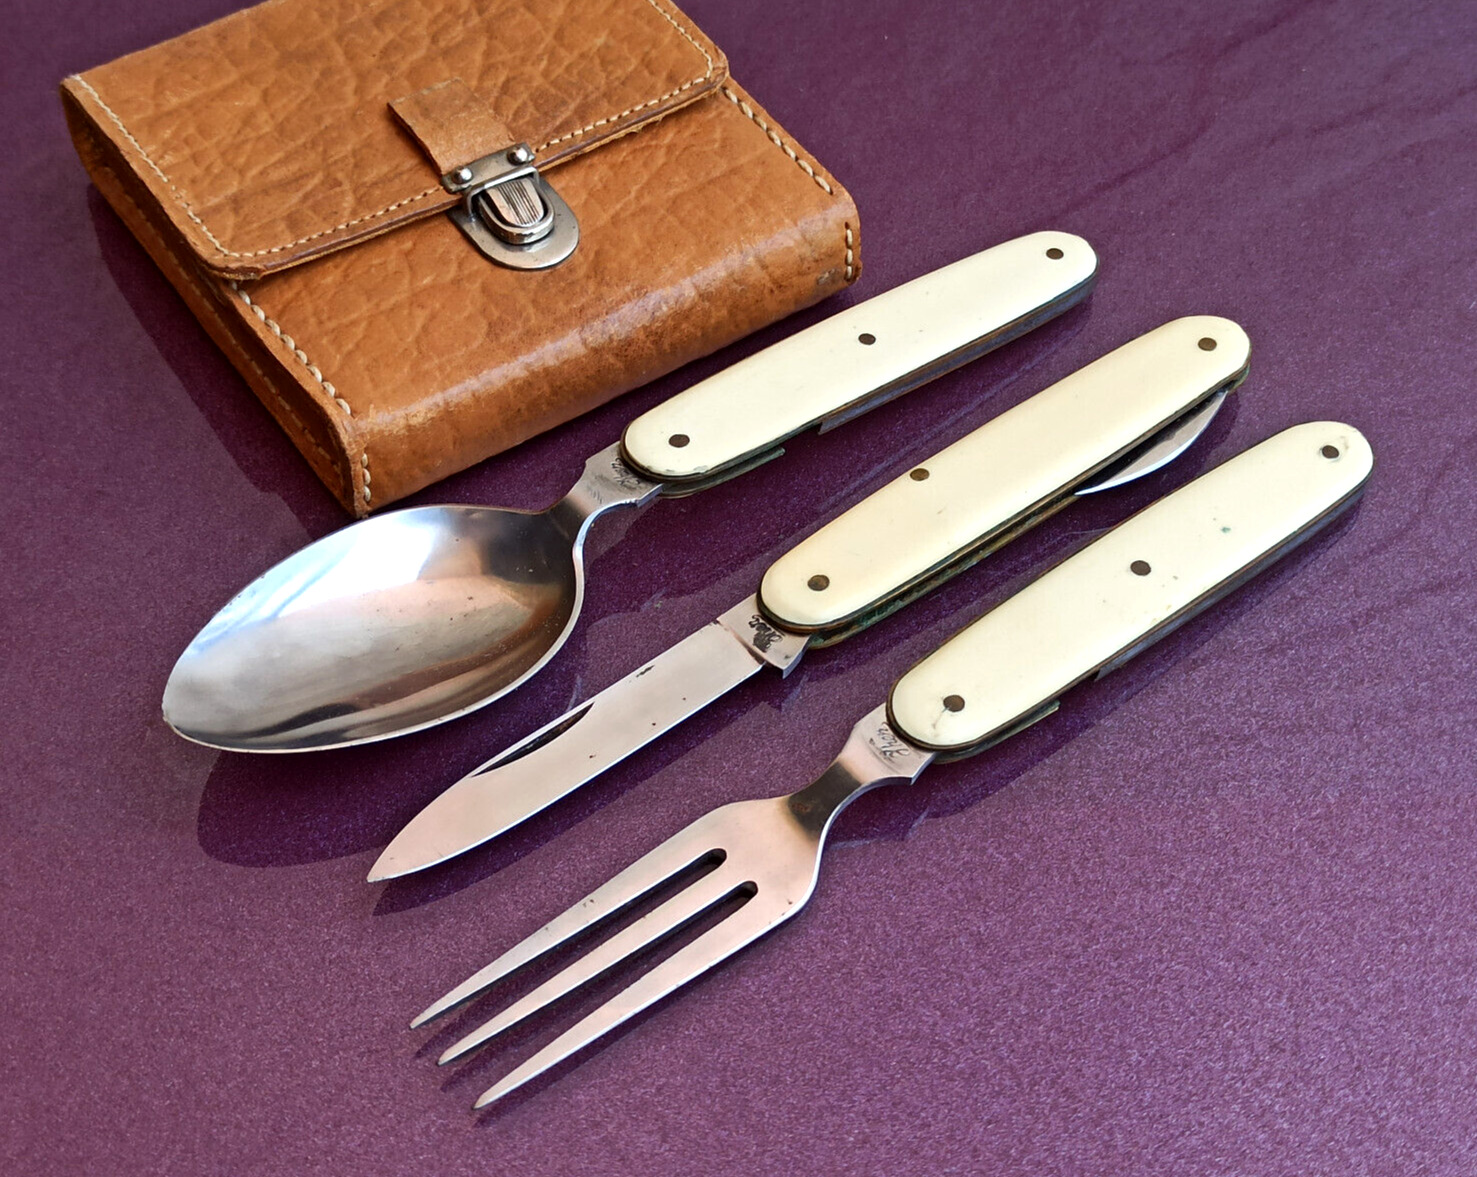 1950 IHER Set, Fork, Spoon, Knife, Tourist Knife, Pocket Knife, Vintage Knife